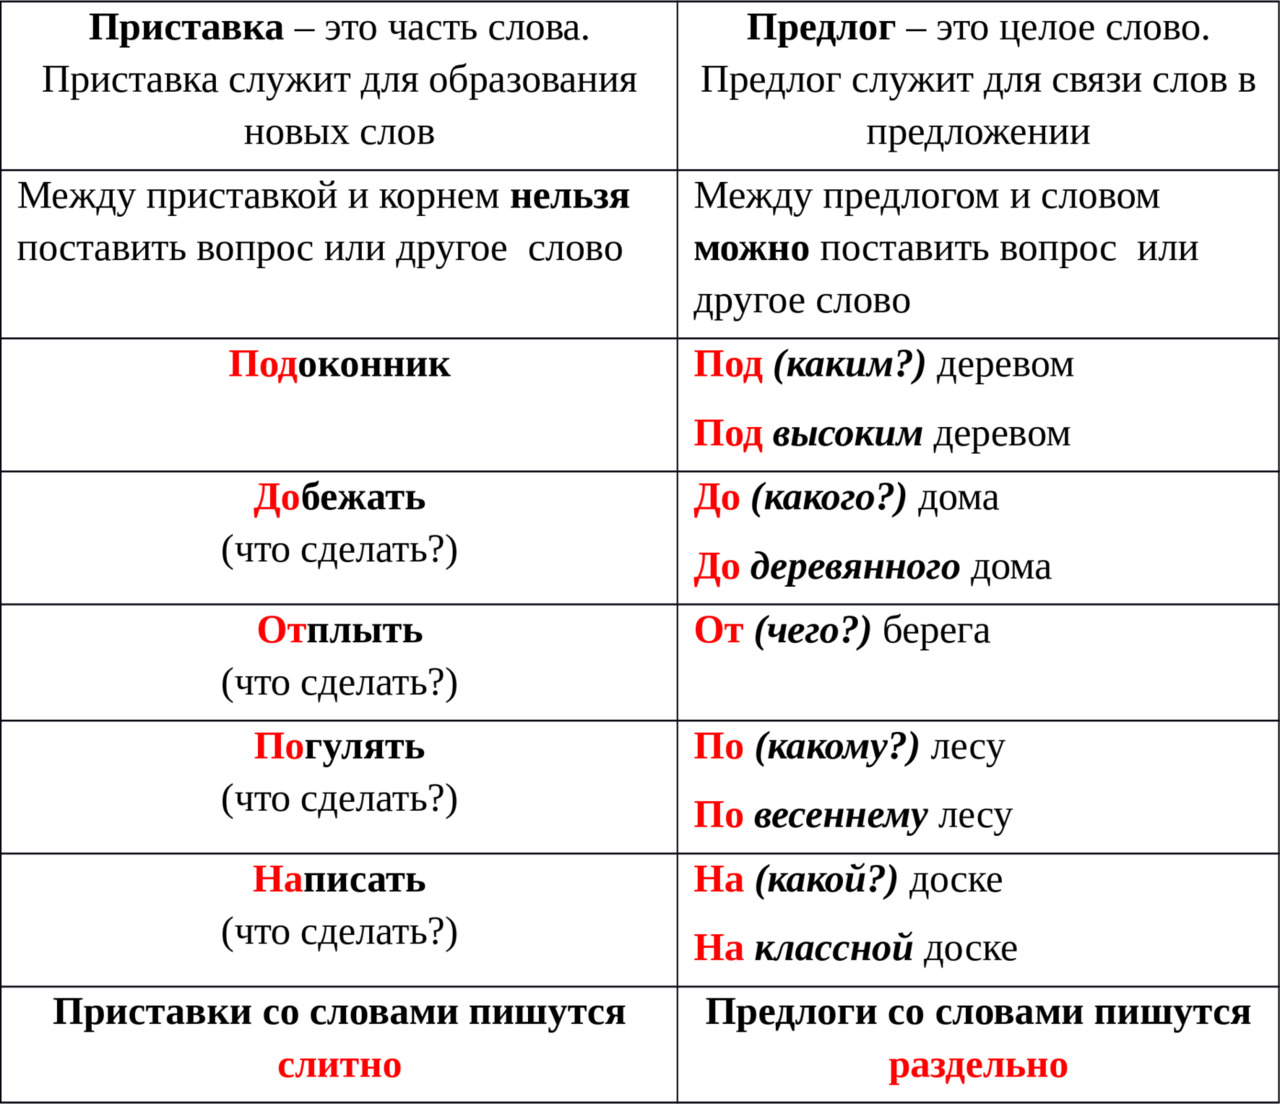 Приставки в русском языке